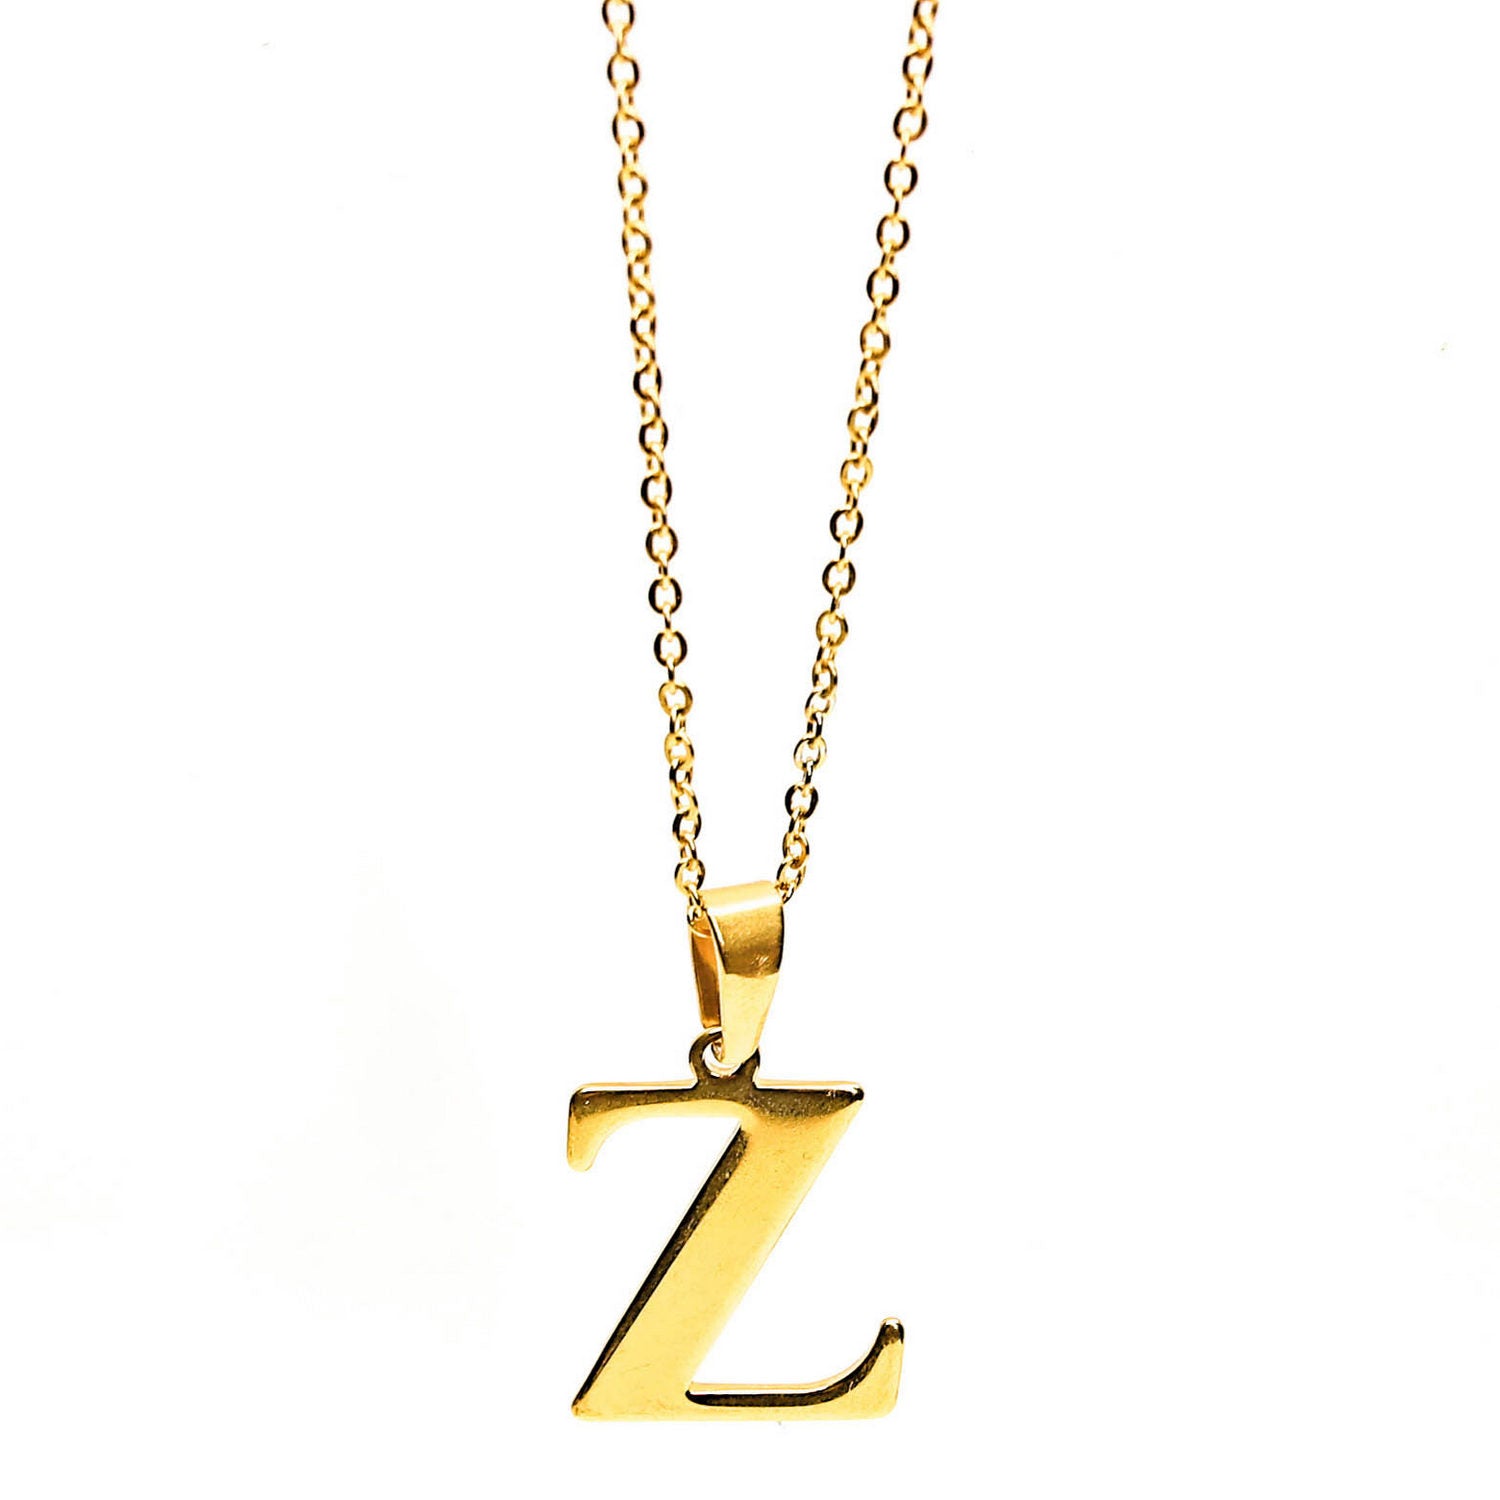 Colgante de acero inoxidable dorado con forma de letra Z de 28mm